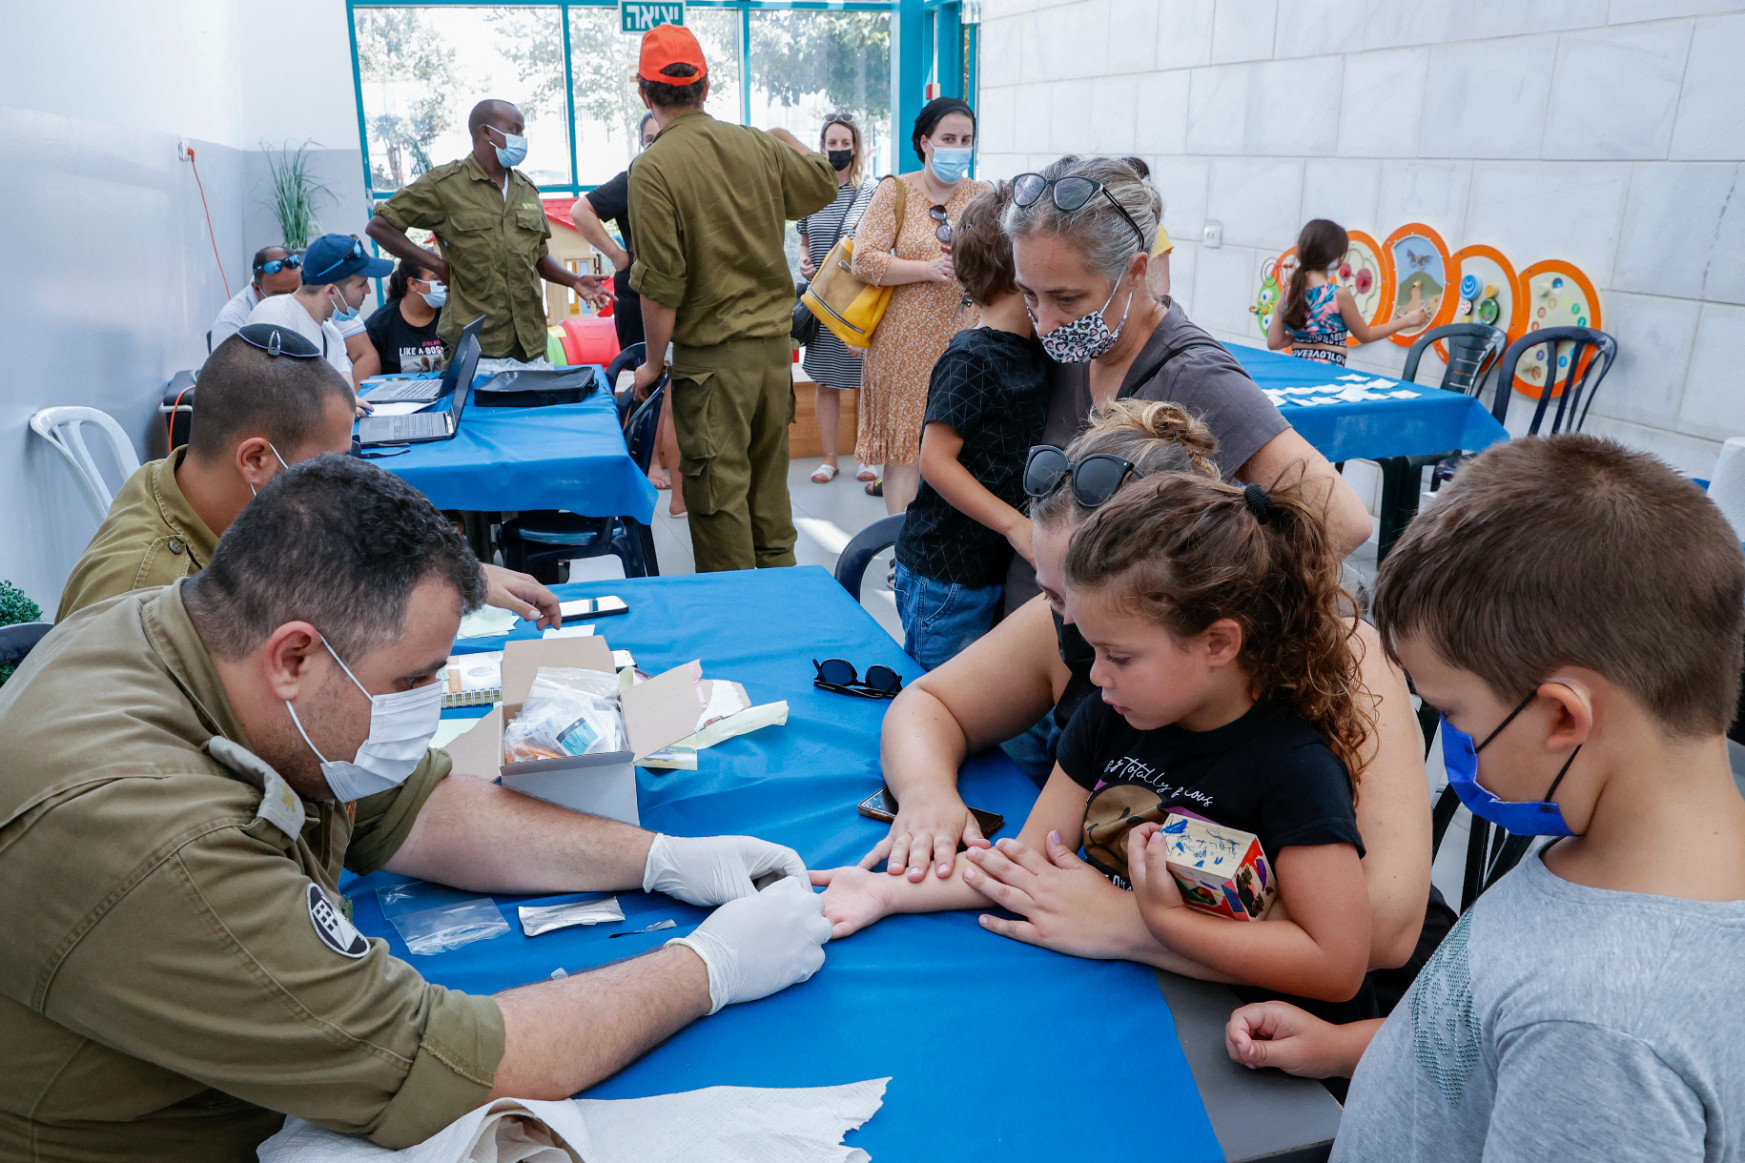 Izraelben már három évtől mérik a gyerekek antitestjeit, hogy minél kevesebben kényszerüljenek karanténba